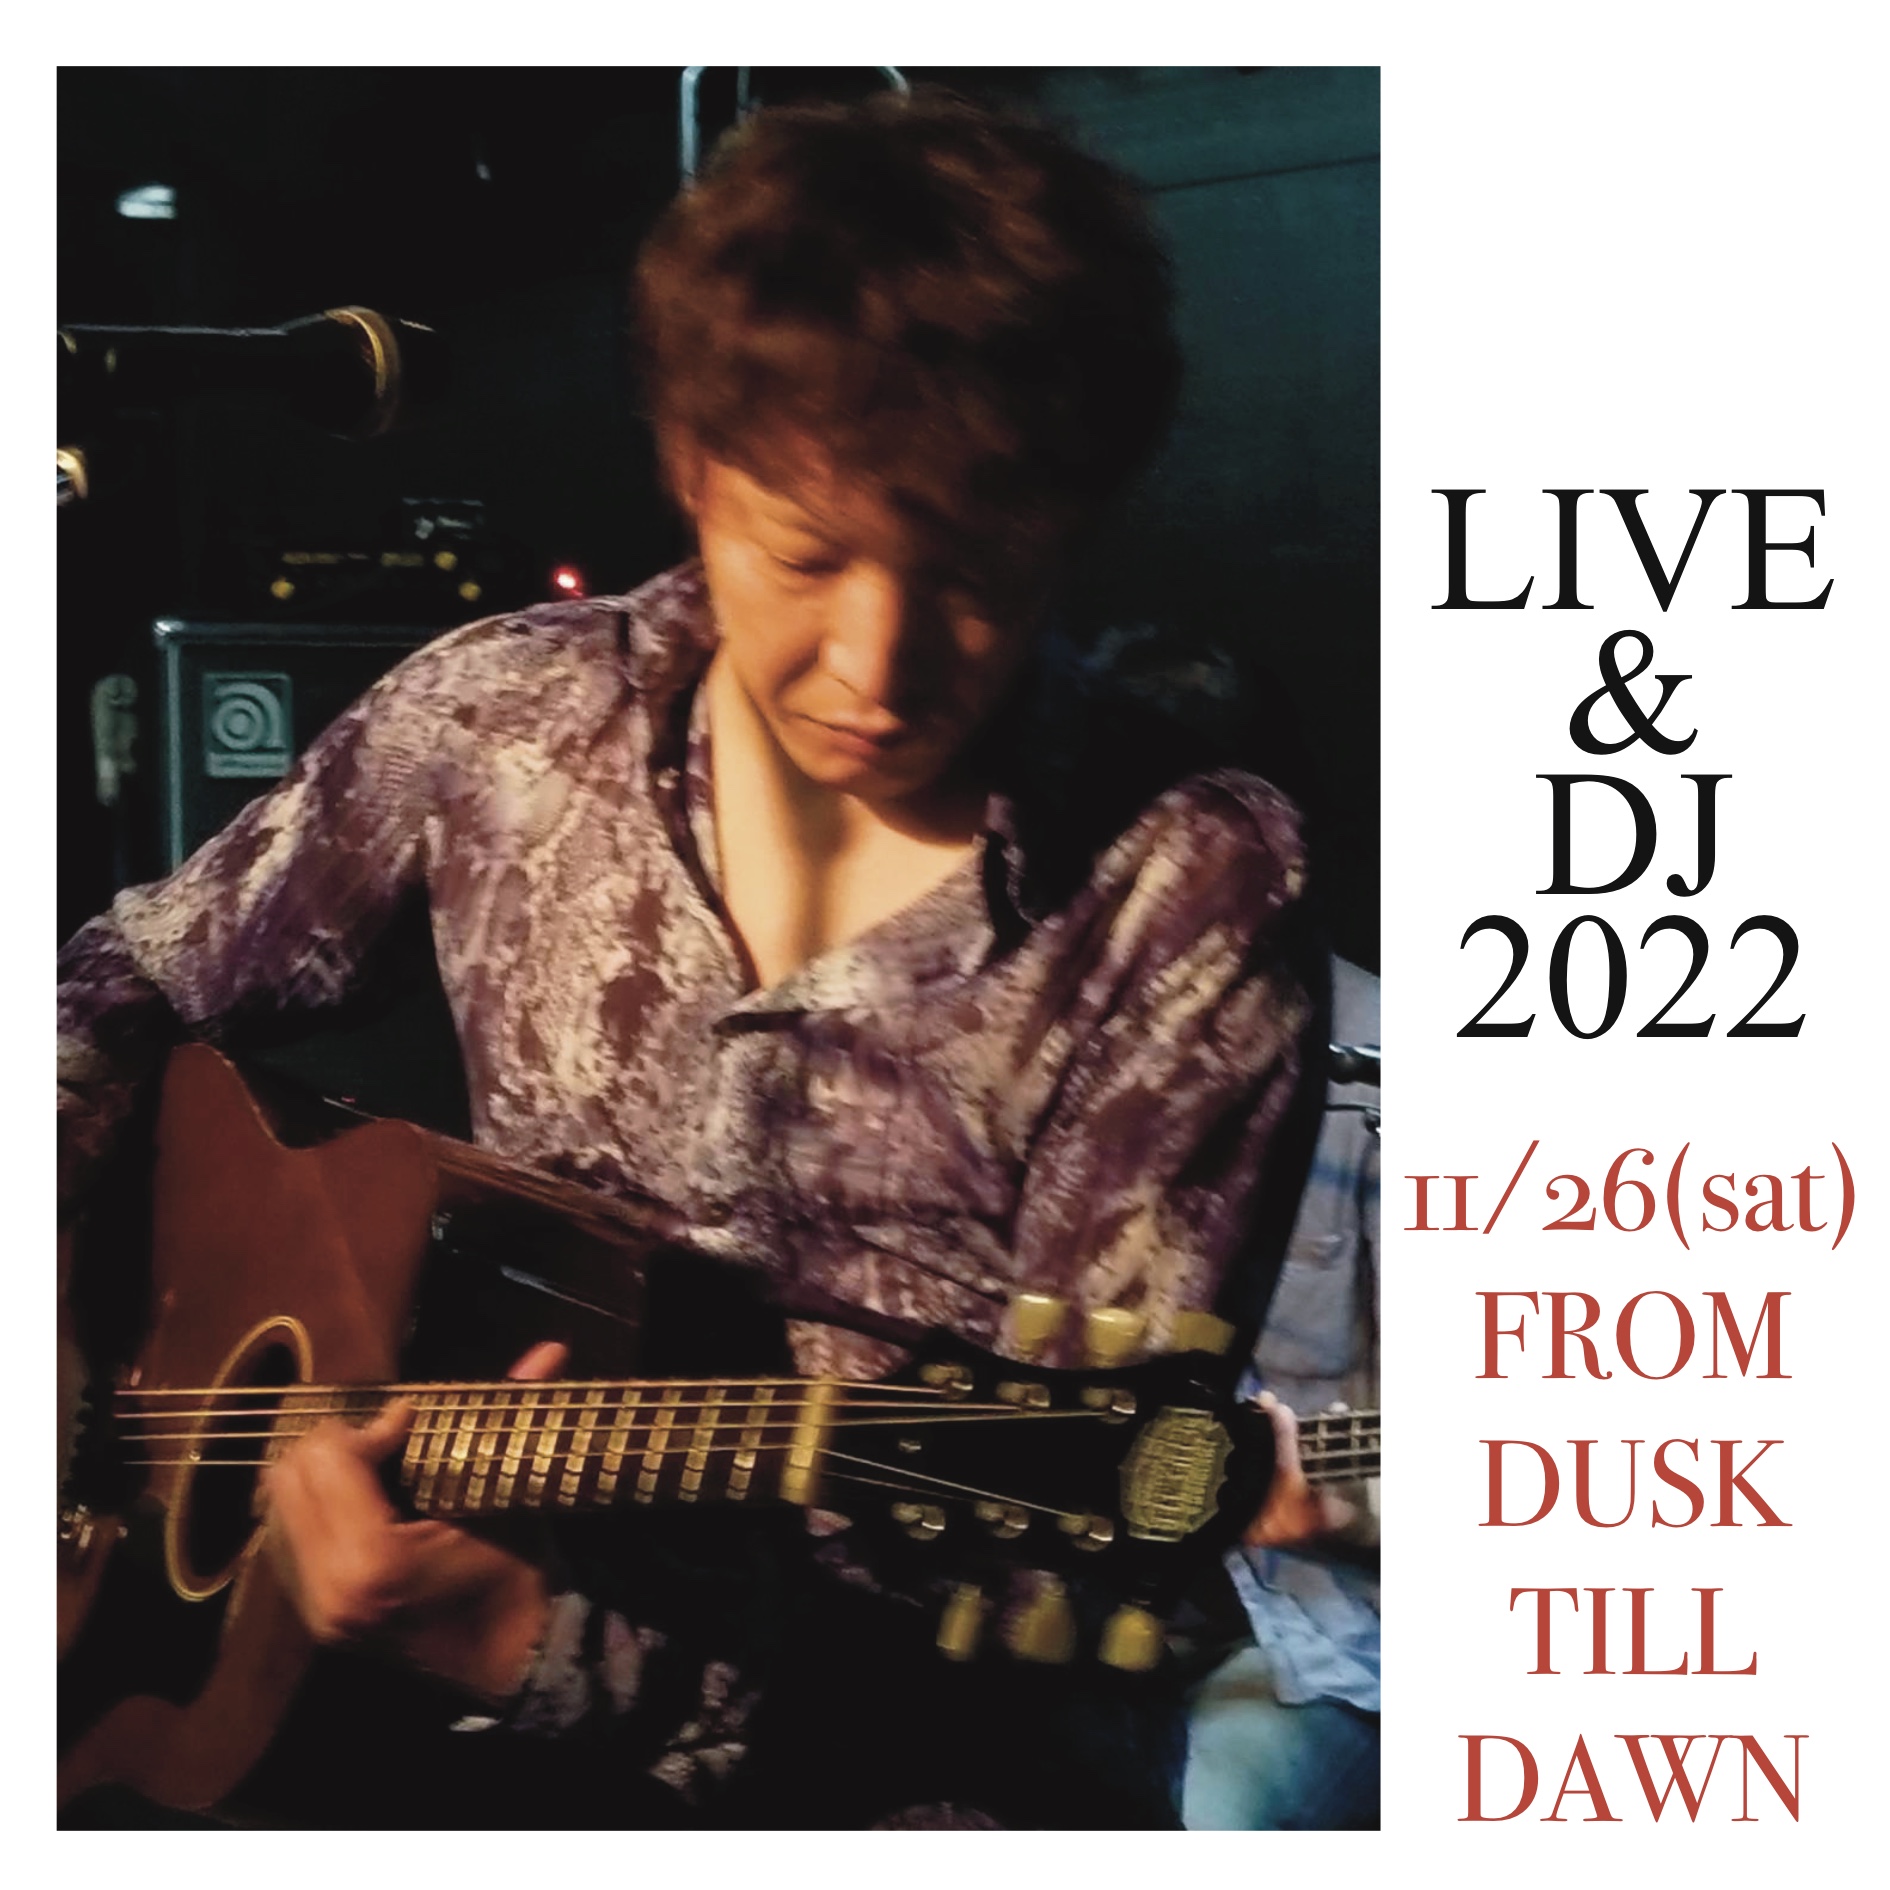 LIVE & DJ 2022